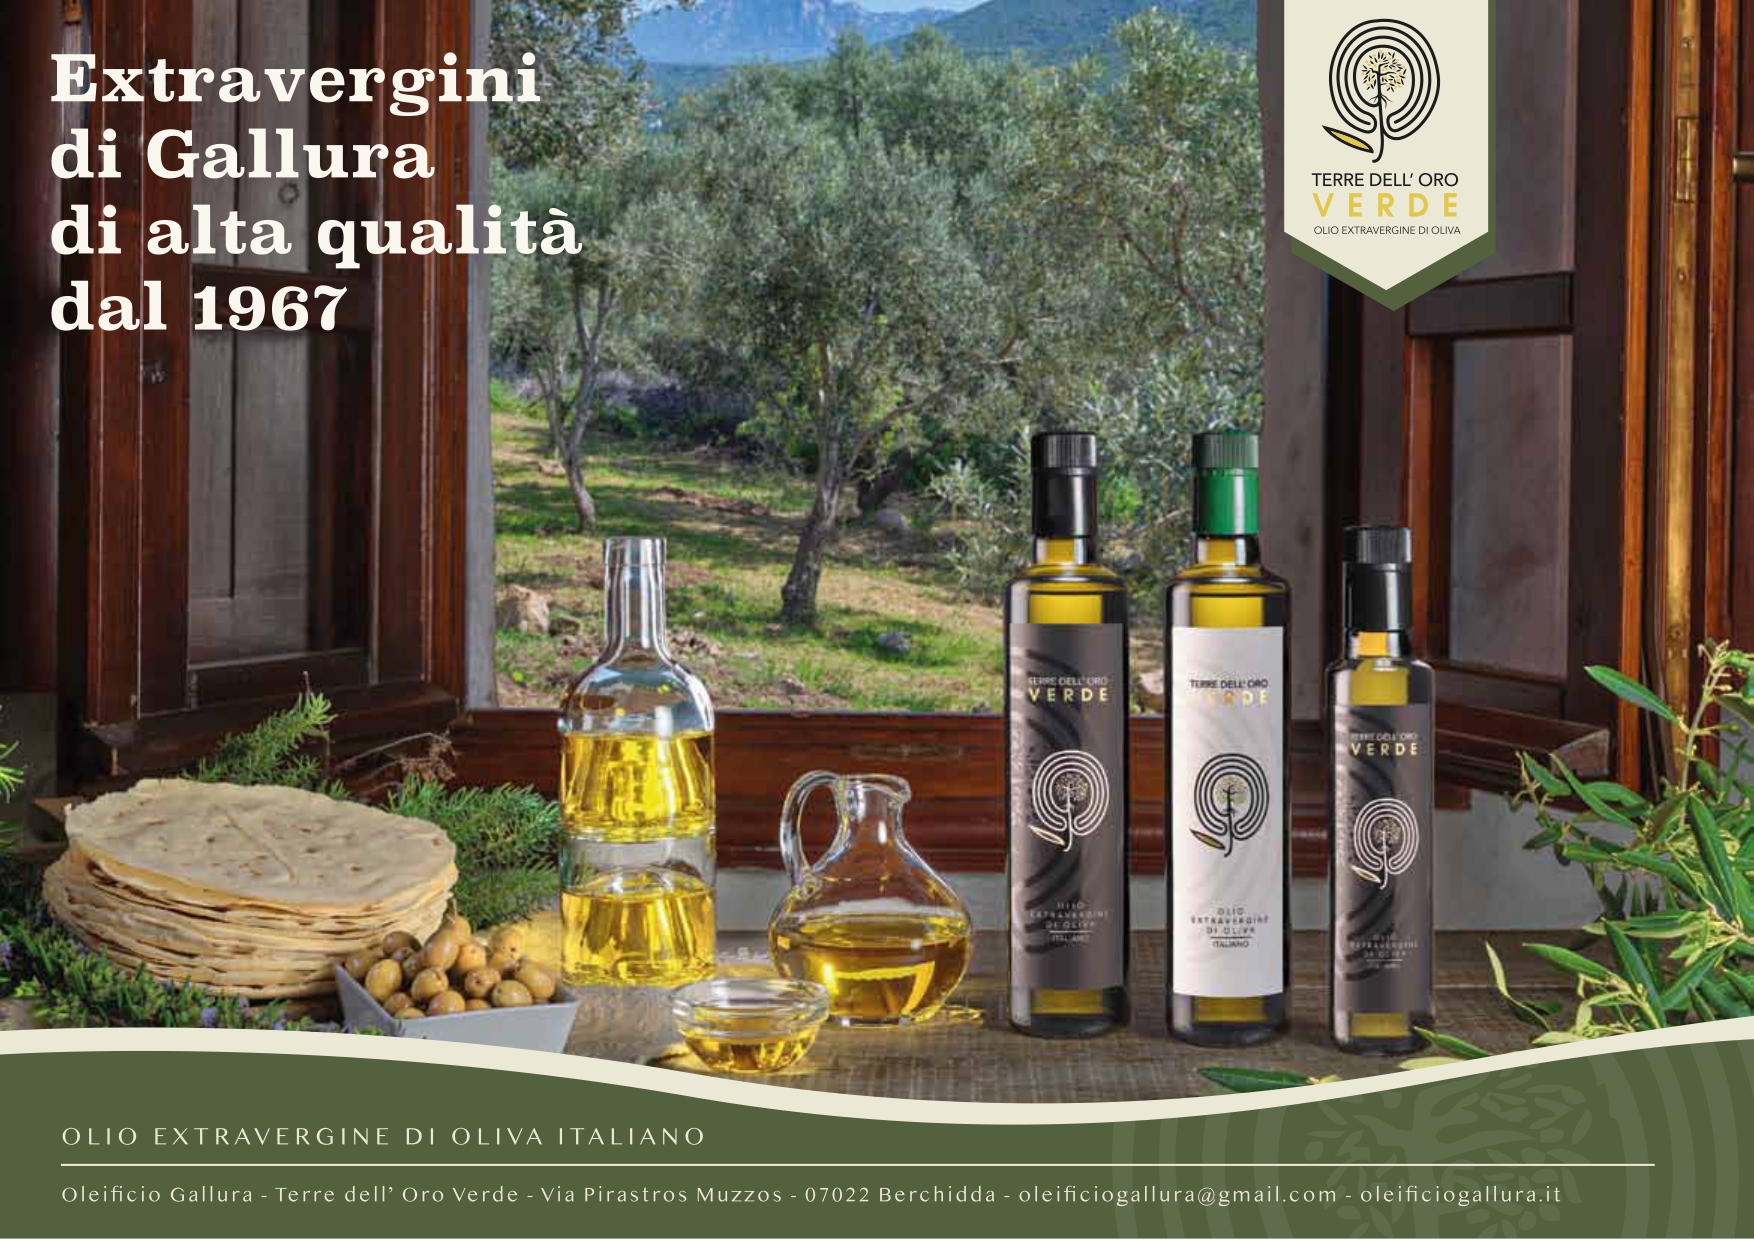 Olive e olio in Gallura: le caratteristiche e gli usi in cucina